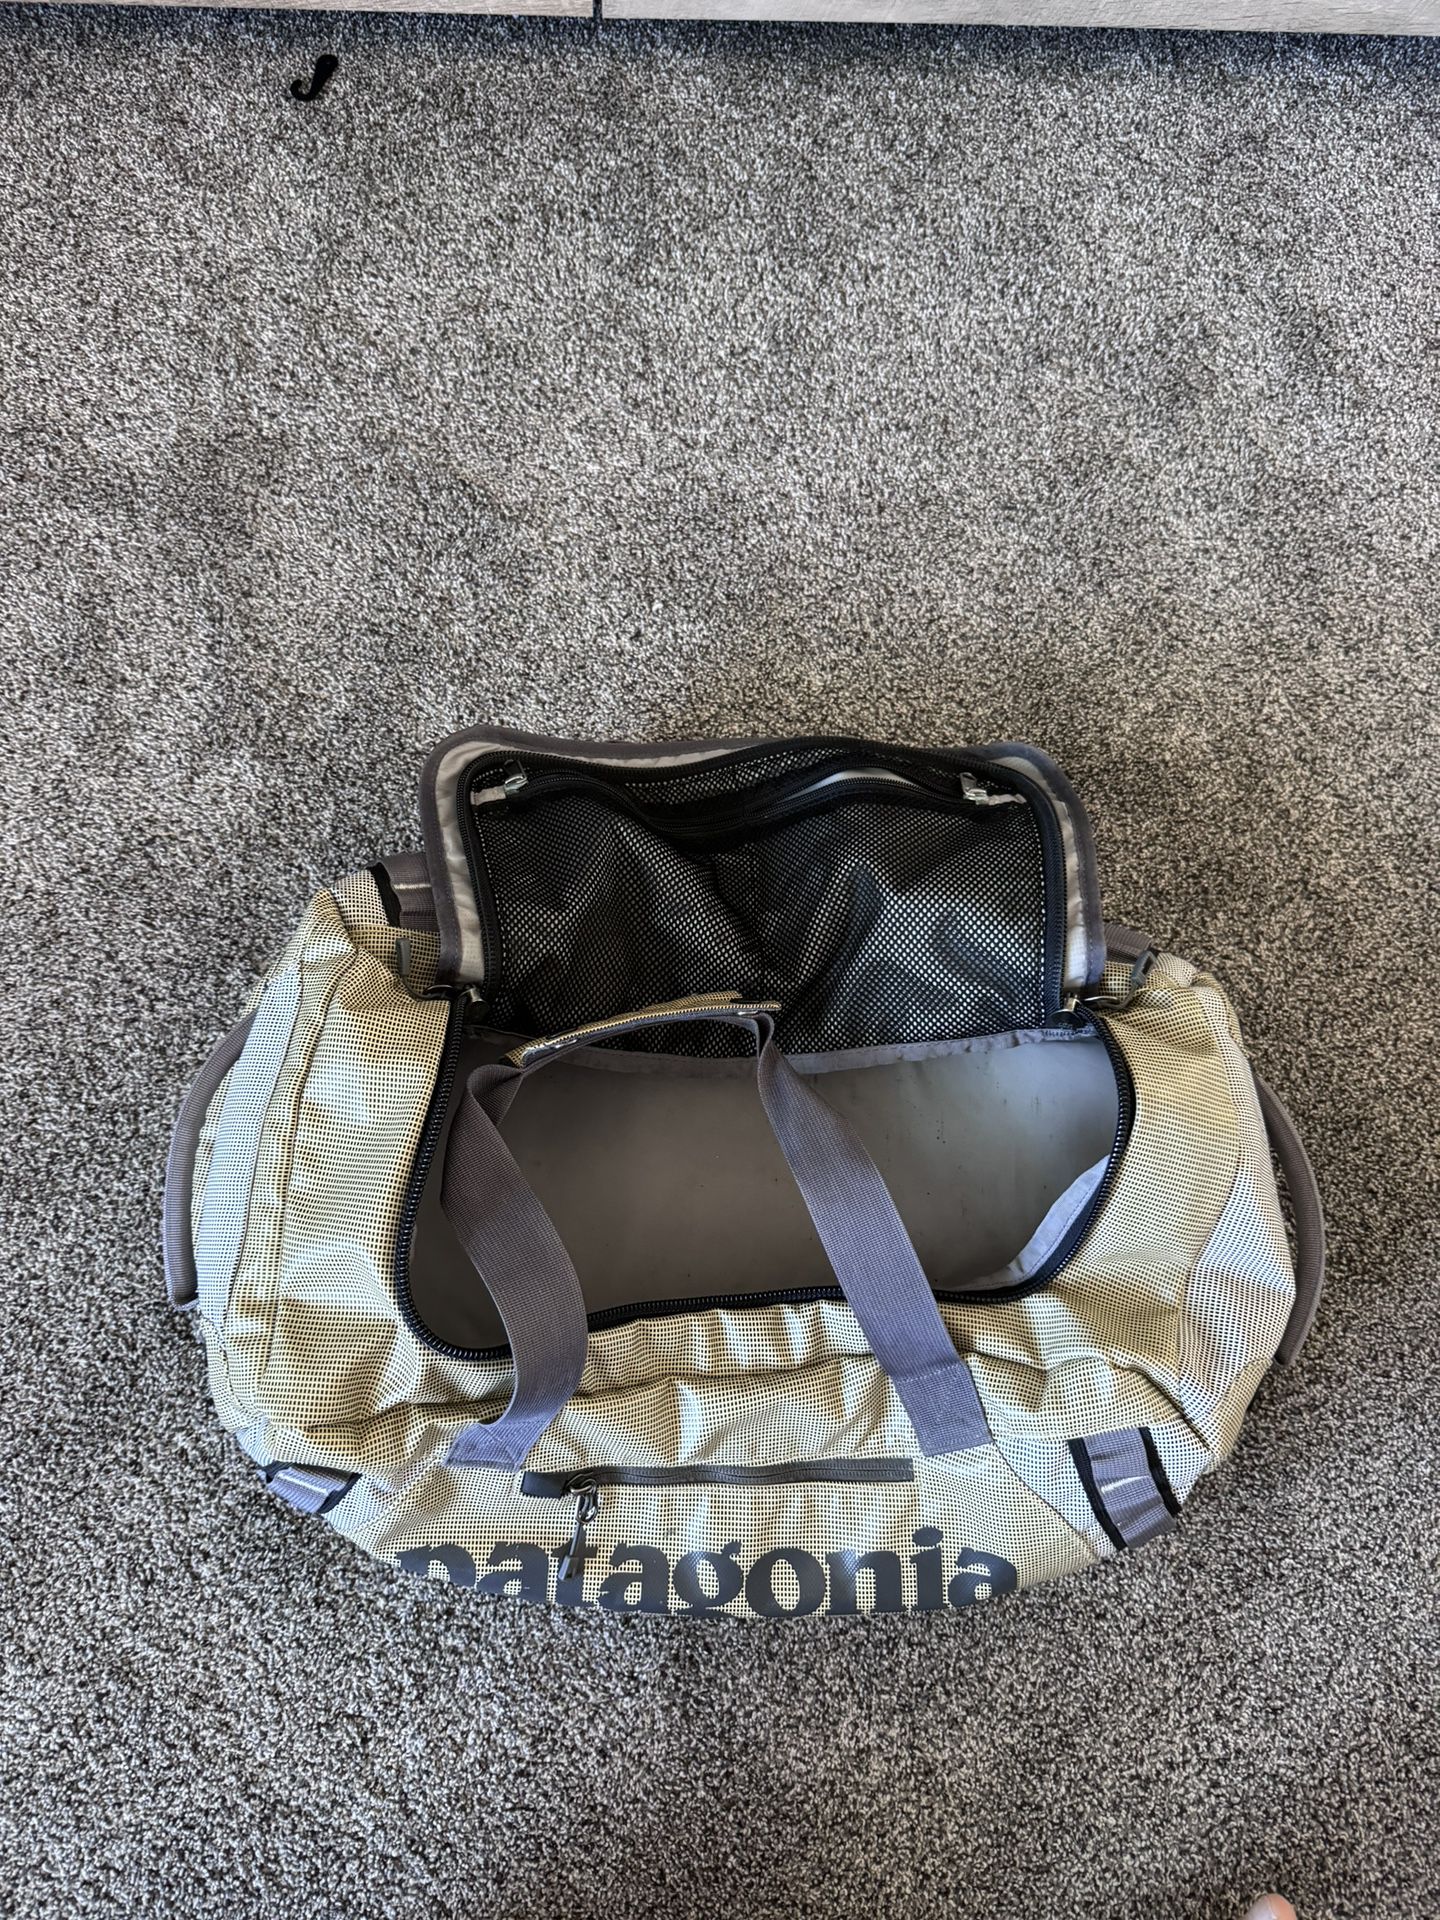 Patagonia Duffle bag